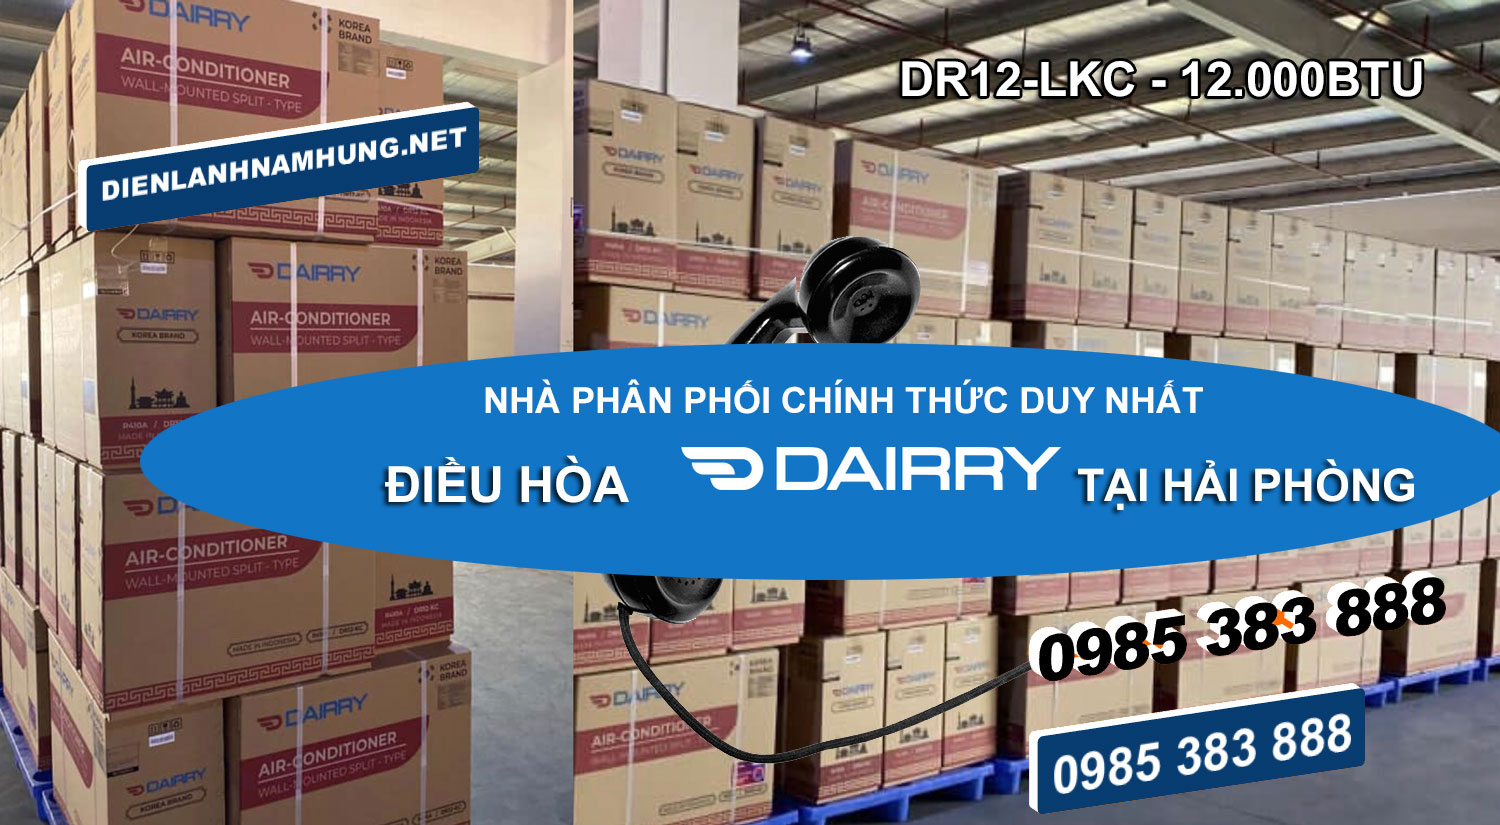 Nha phan phoi dieu hoa Dairry DR12-LKC tai Hai Phong